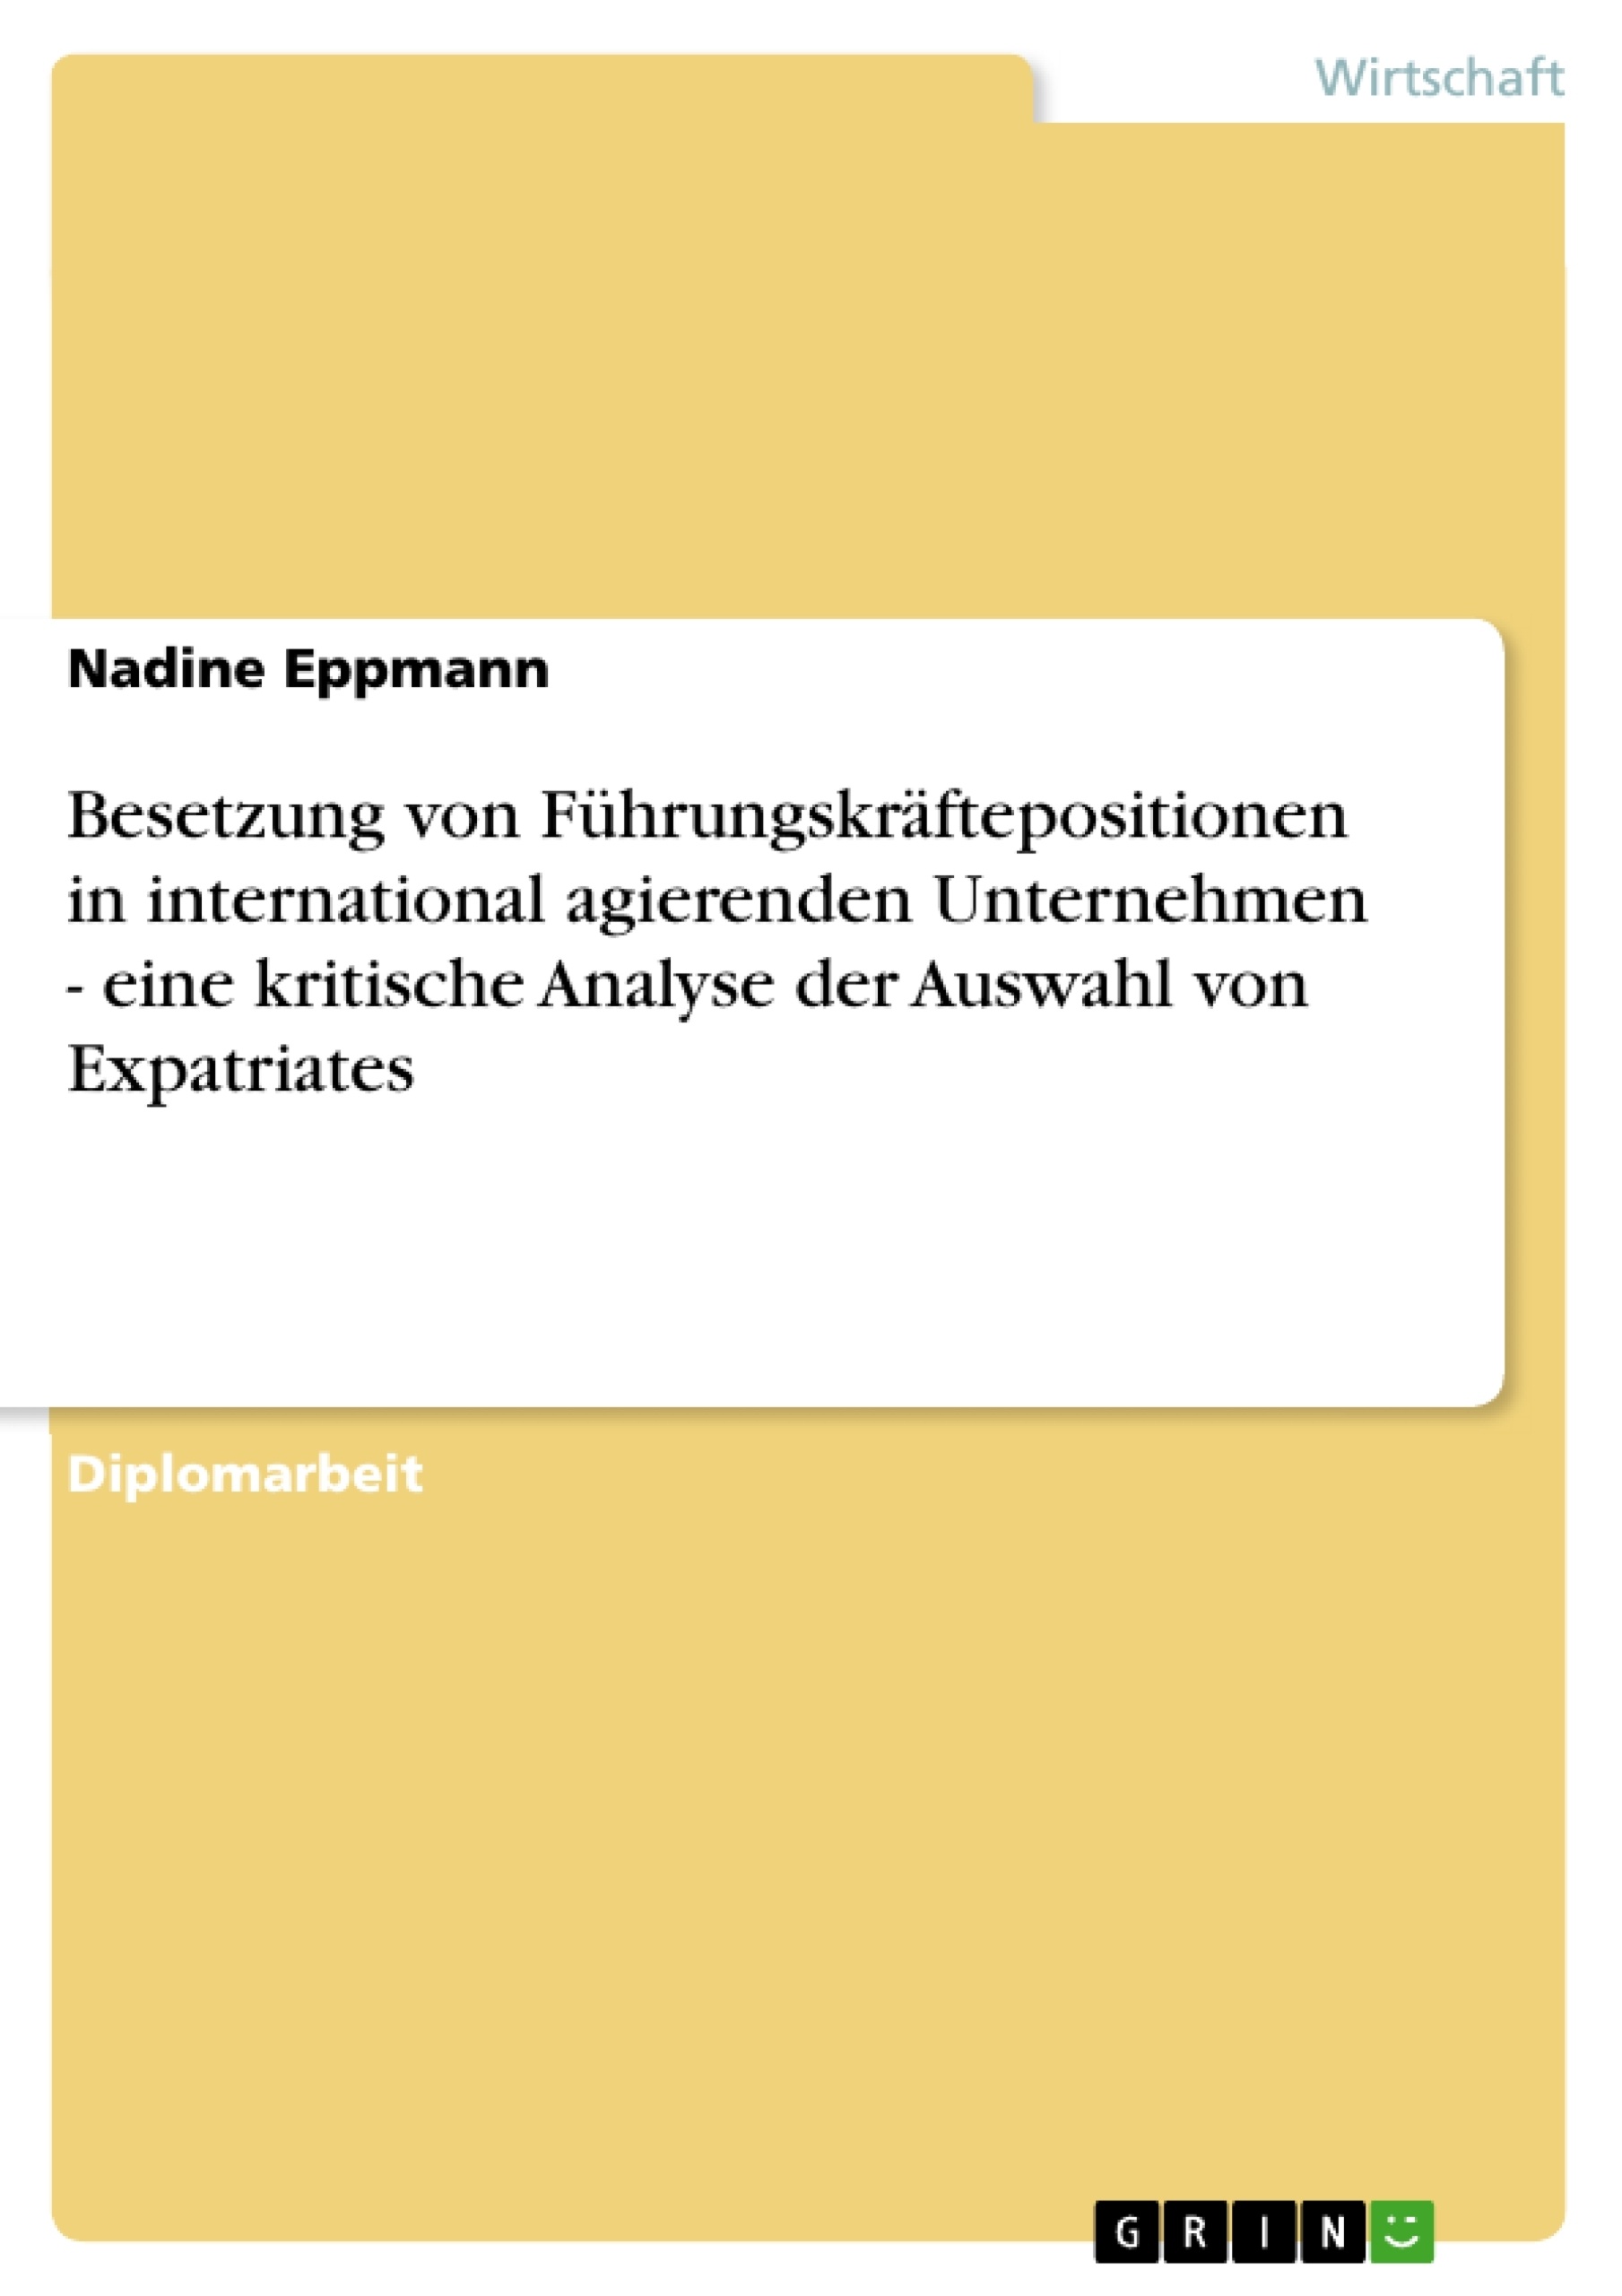 Title: Besetzung von Führungskräftepositionen in international agierenden Unternehmen - eine kritische Analyse der Auswahl von Expatriates